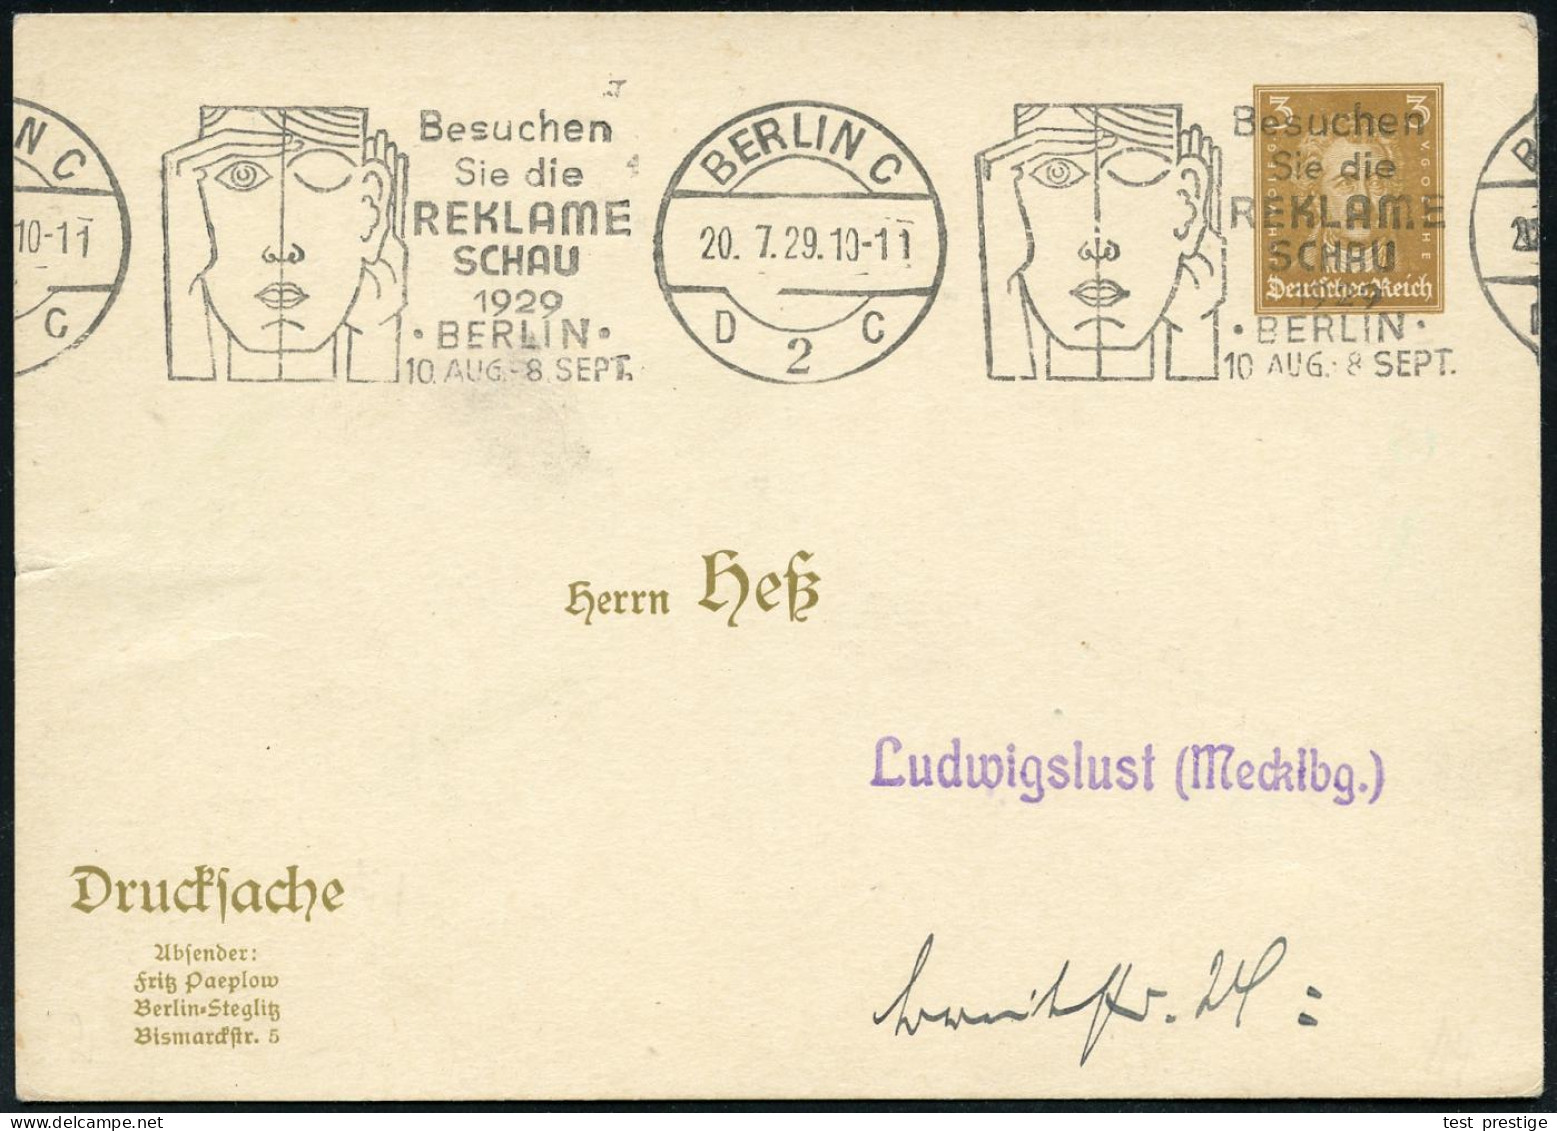 BERLIN C/ D2C/ ..REKLAME/ SCHAU/ ..10.AUG.-8.SEPT. 1929 (20.7.) Band-MWSt (Gesicht Mit Betonung Von  A U G E  Und Ohr) A - Krankheiten